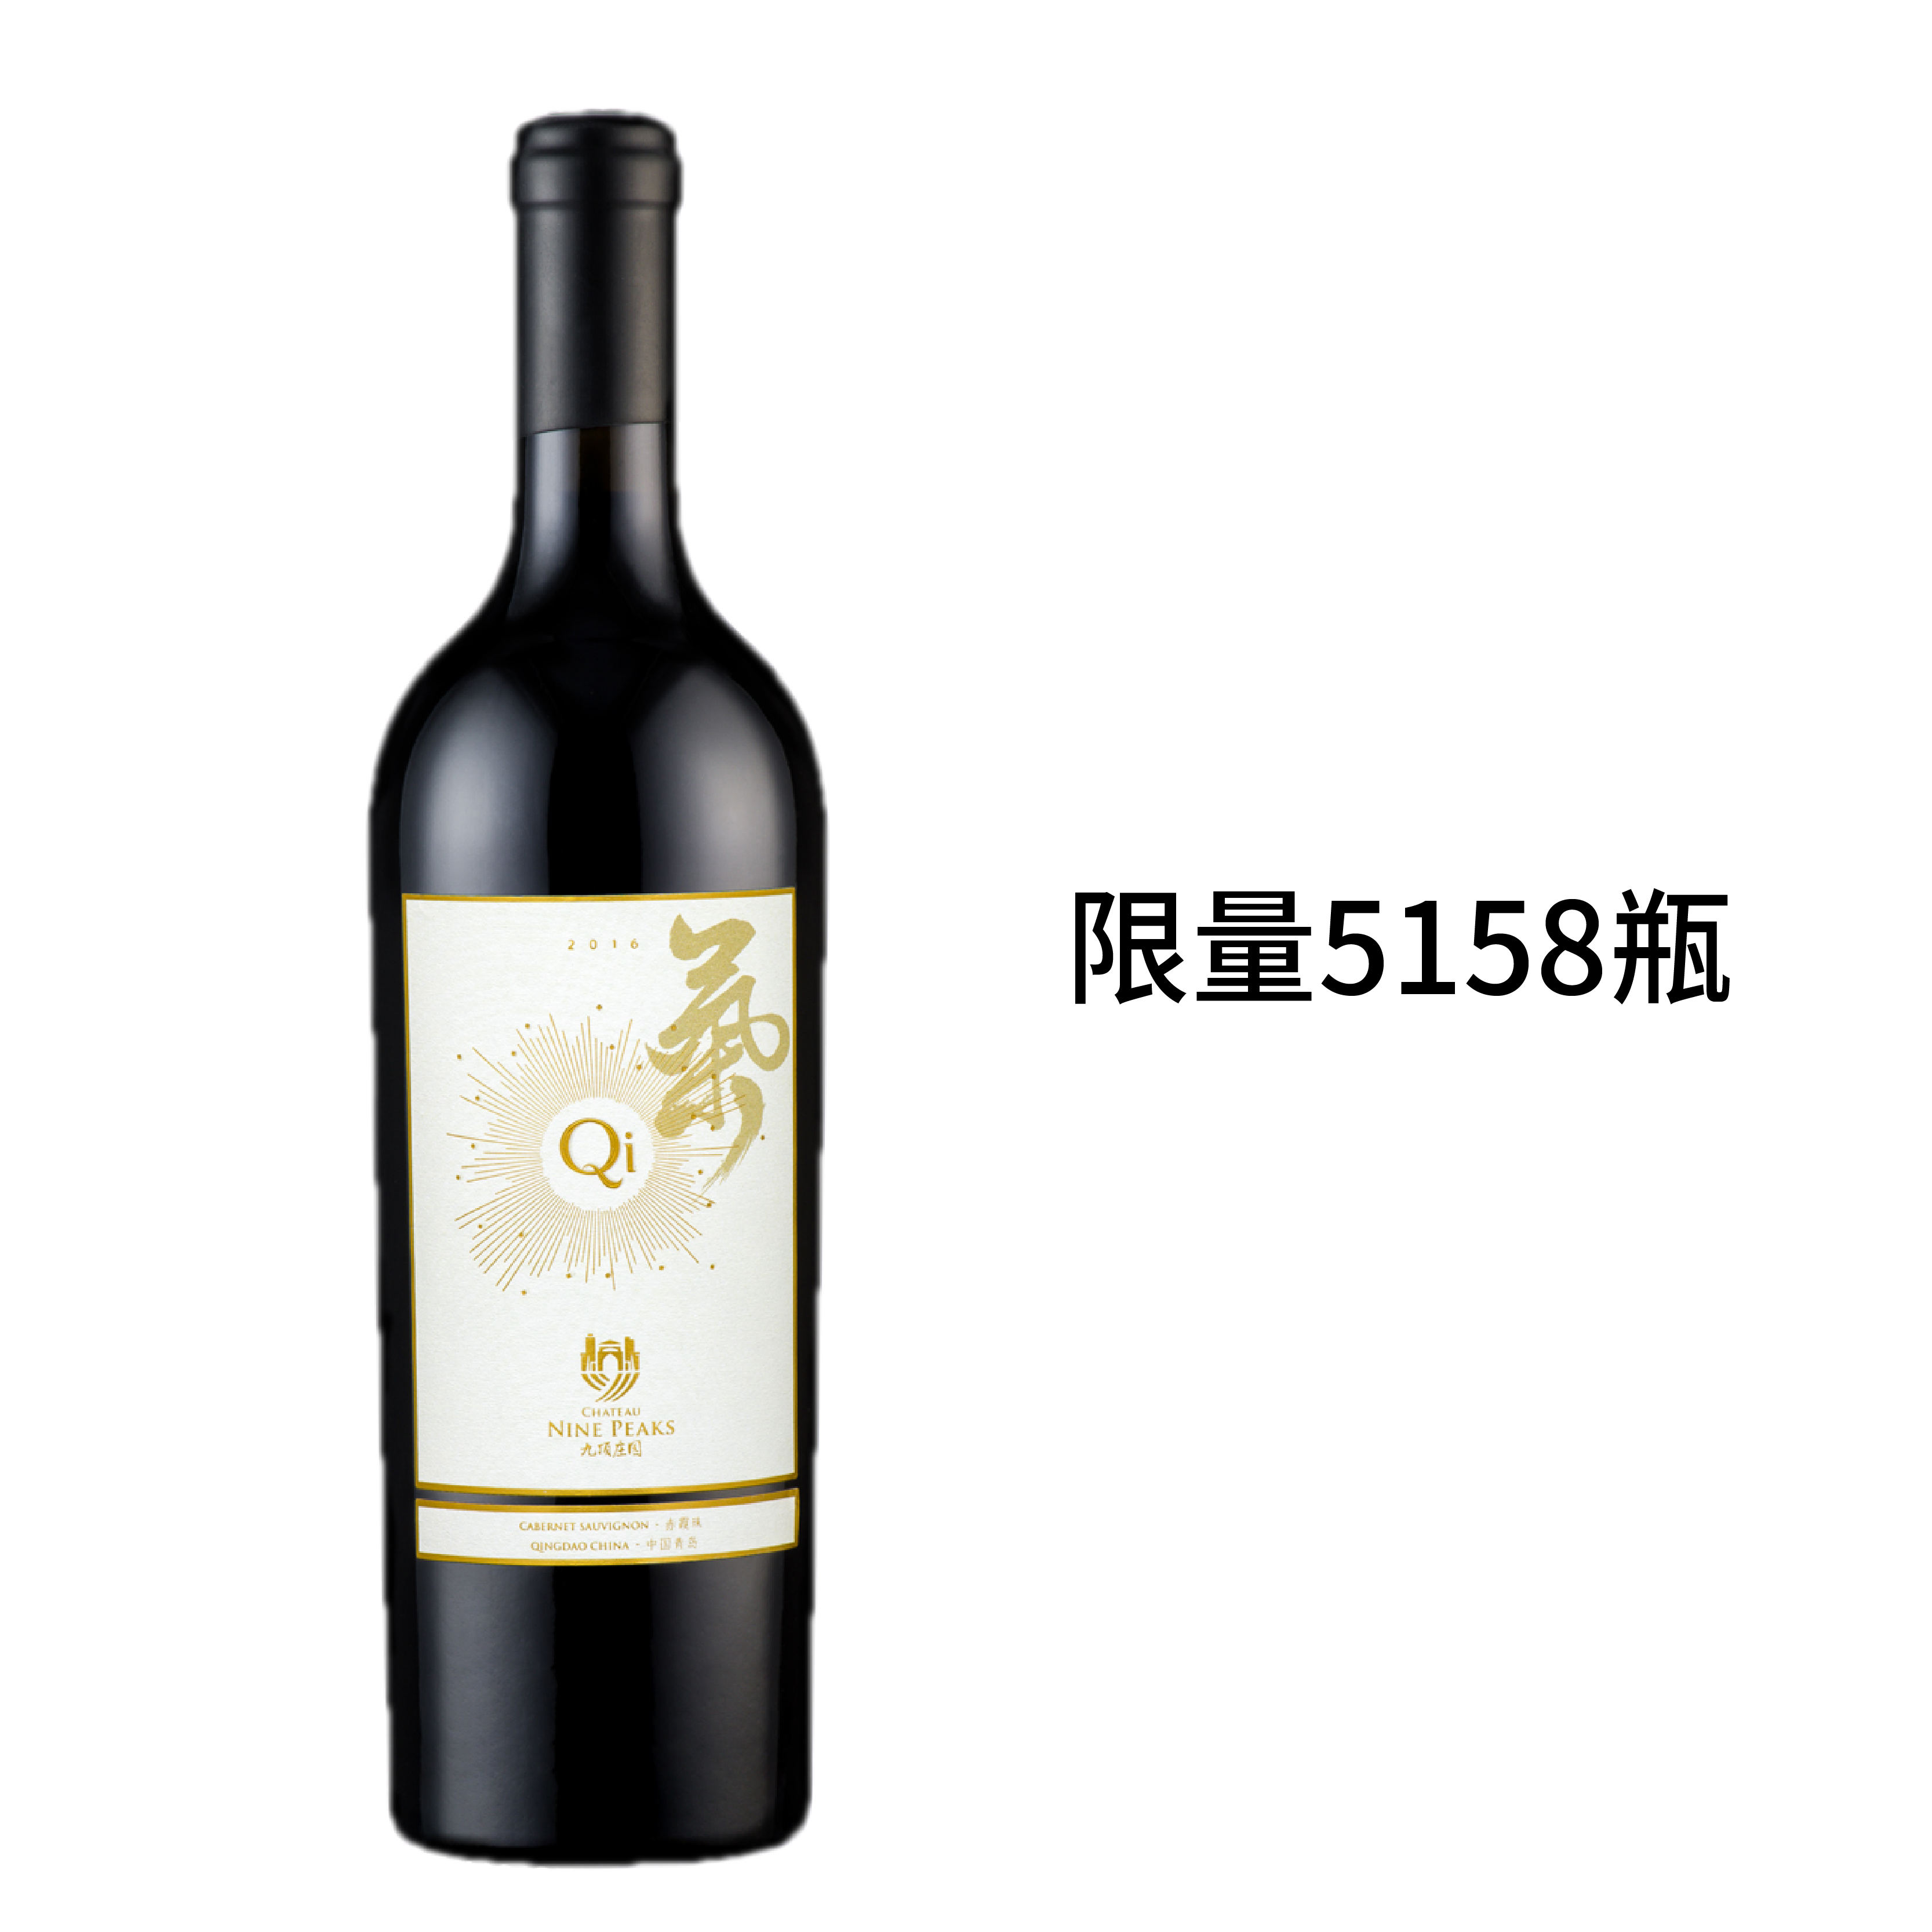 九顶庄园氣干红葡萄酒2016